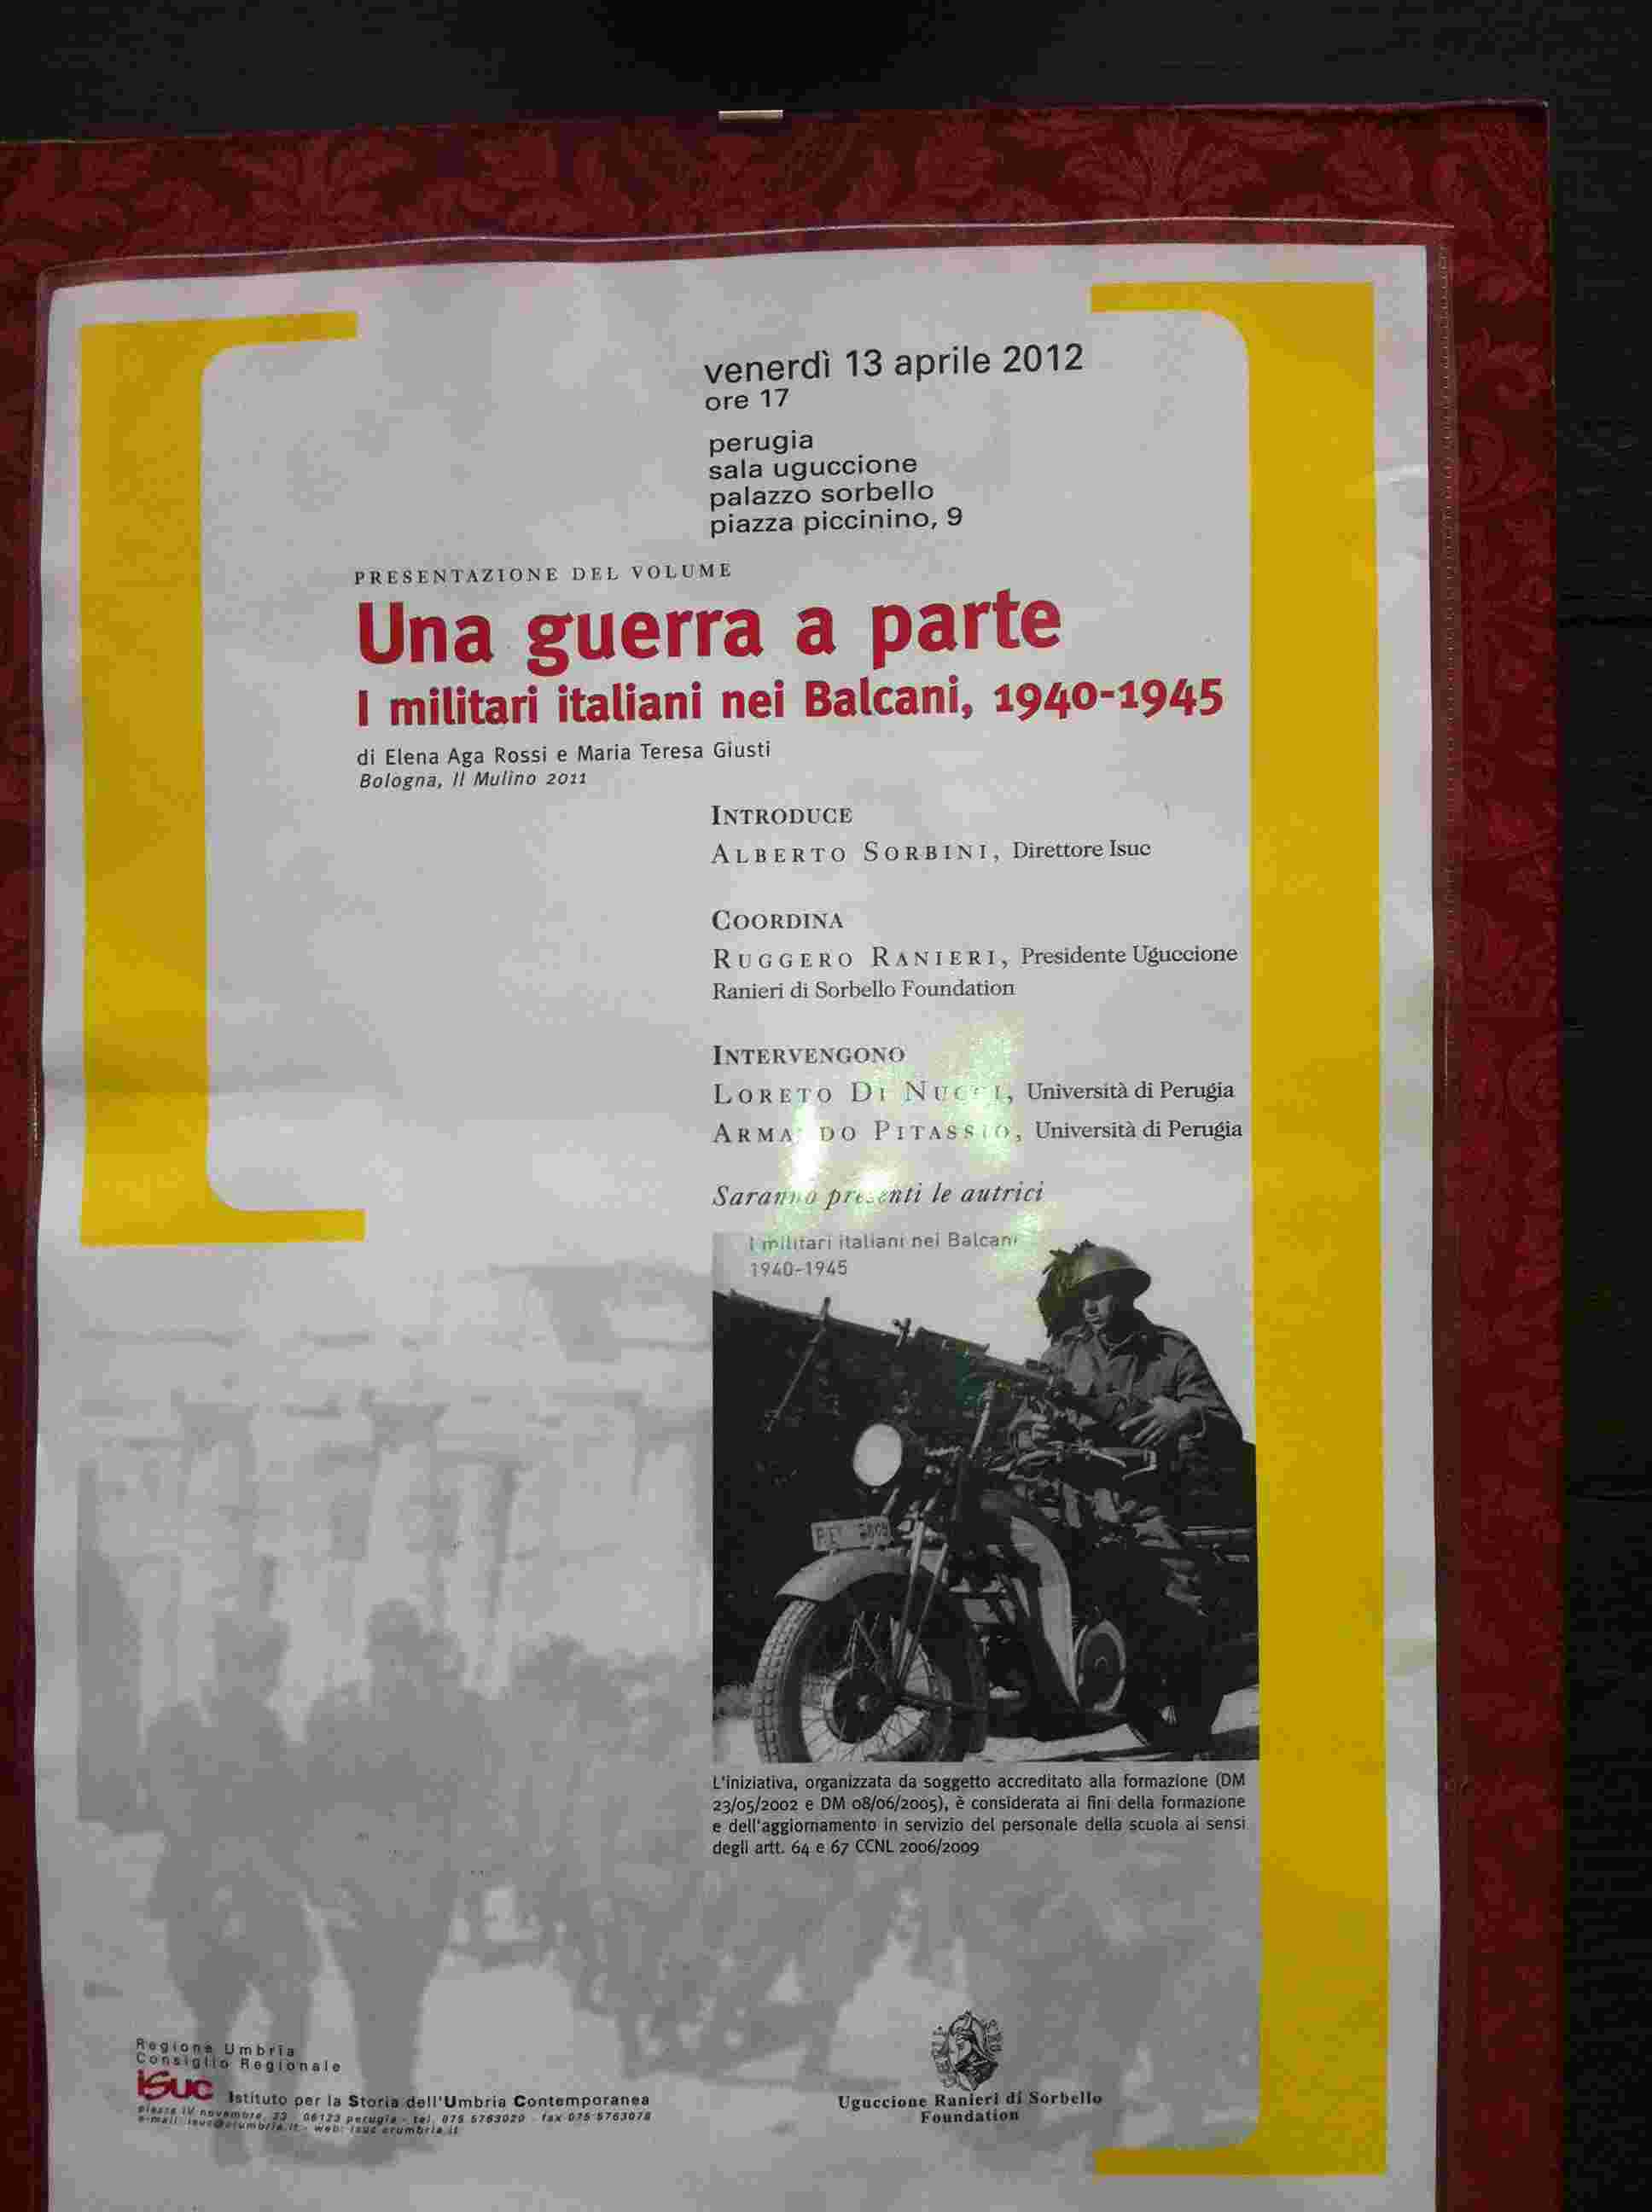 Presentazione del volume Una guerra a parte.  I militari italiani nei Balcani, 1940-1945